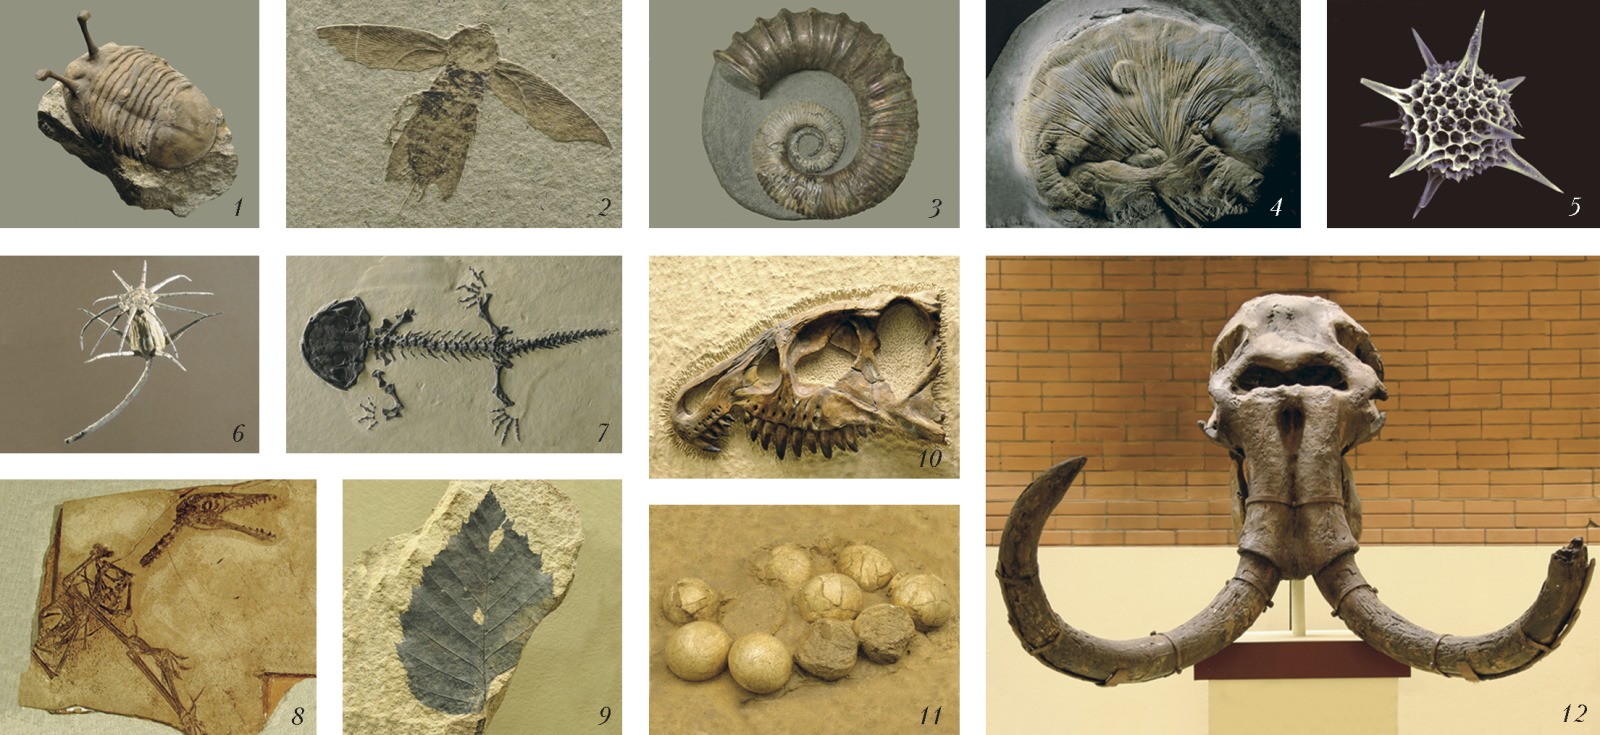 Какие породы образуются из останков живых. Окаменелости ордовика. Ископаемые окаменелости Ордовик. Палеонтология(наука изучающая ископаемые останки).